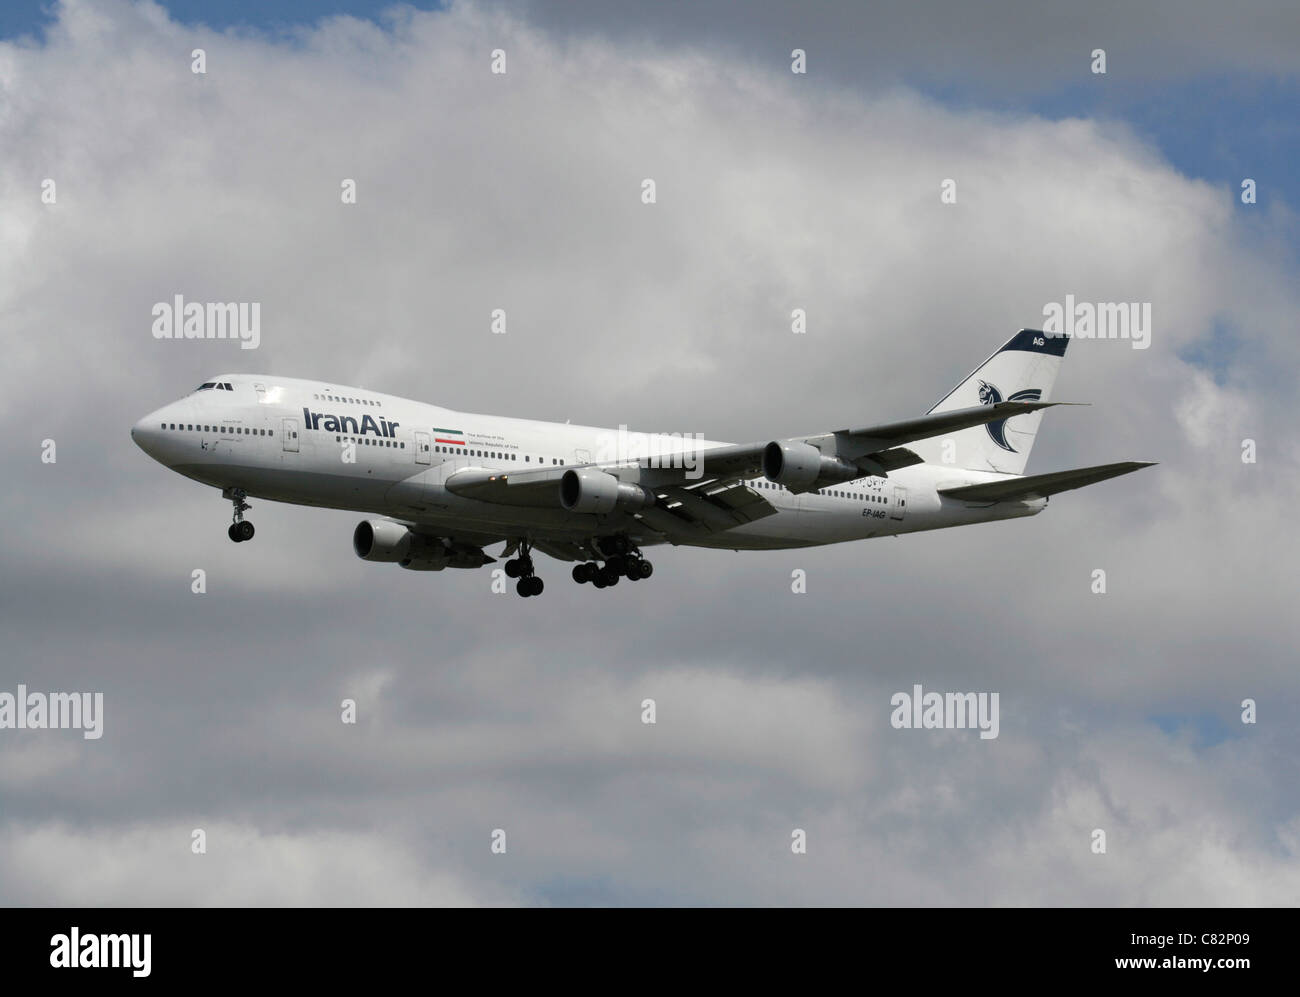 Iran Air Boeing 747-200 jumbo jet passeggeri aereo di linea su approccio Foto Stock